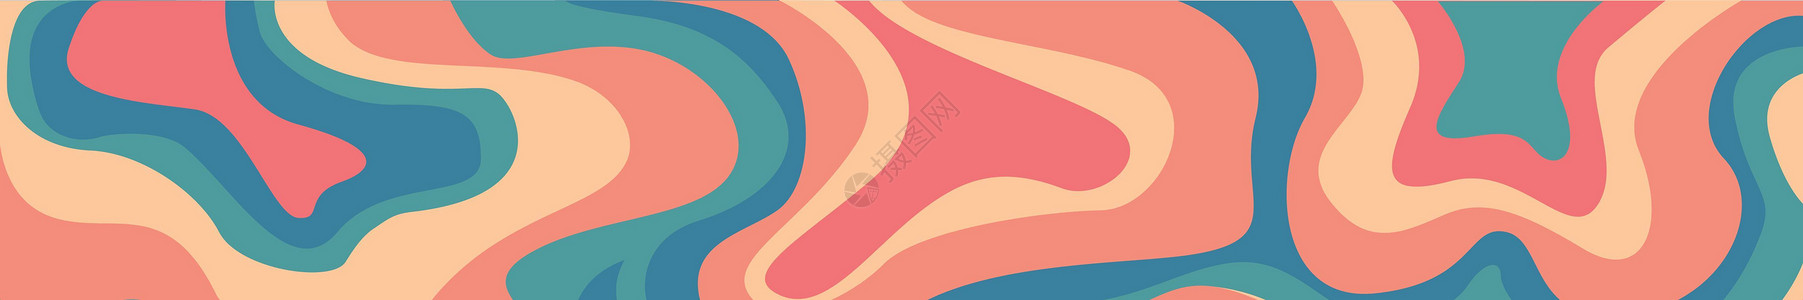 抽象明背景 多色大浪线  矢量坡度条纹曲线水平框架墙纸创造力圆圈彩虹艺术背景图片